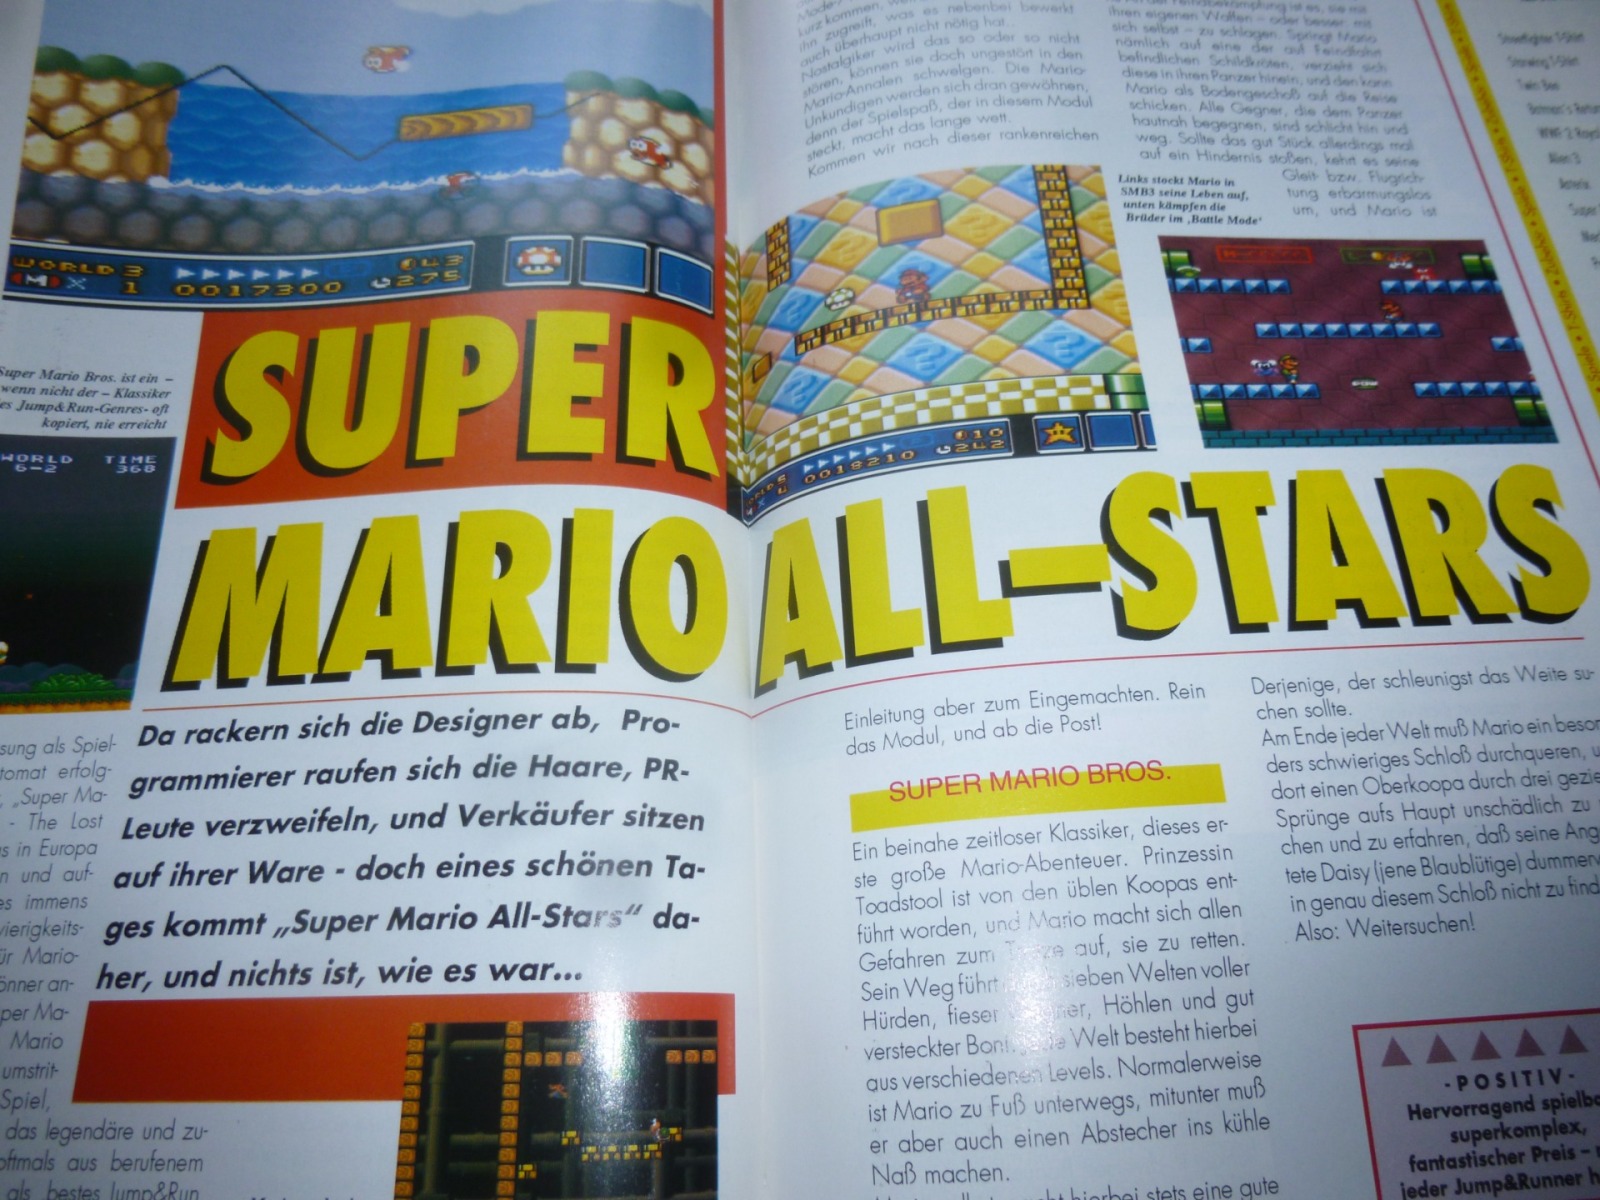 TOTAL Das unabhängige Magazin - 100 Nintendo - Ausgabe 9/93 1993 25